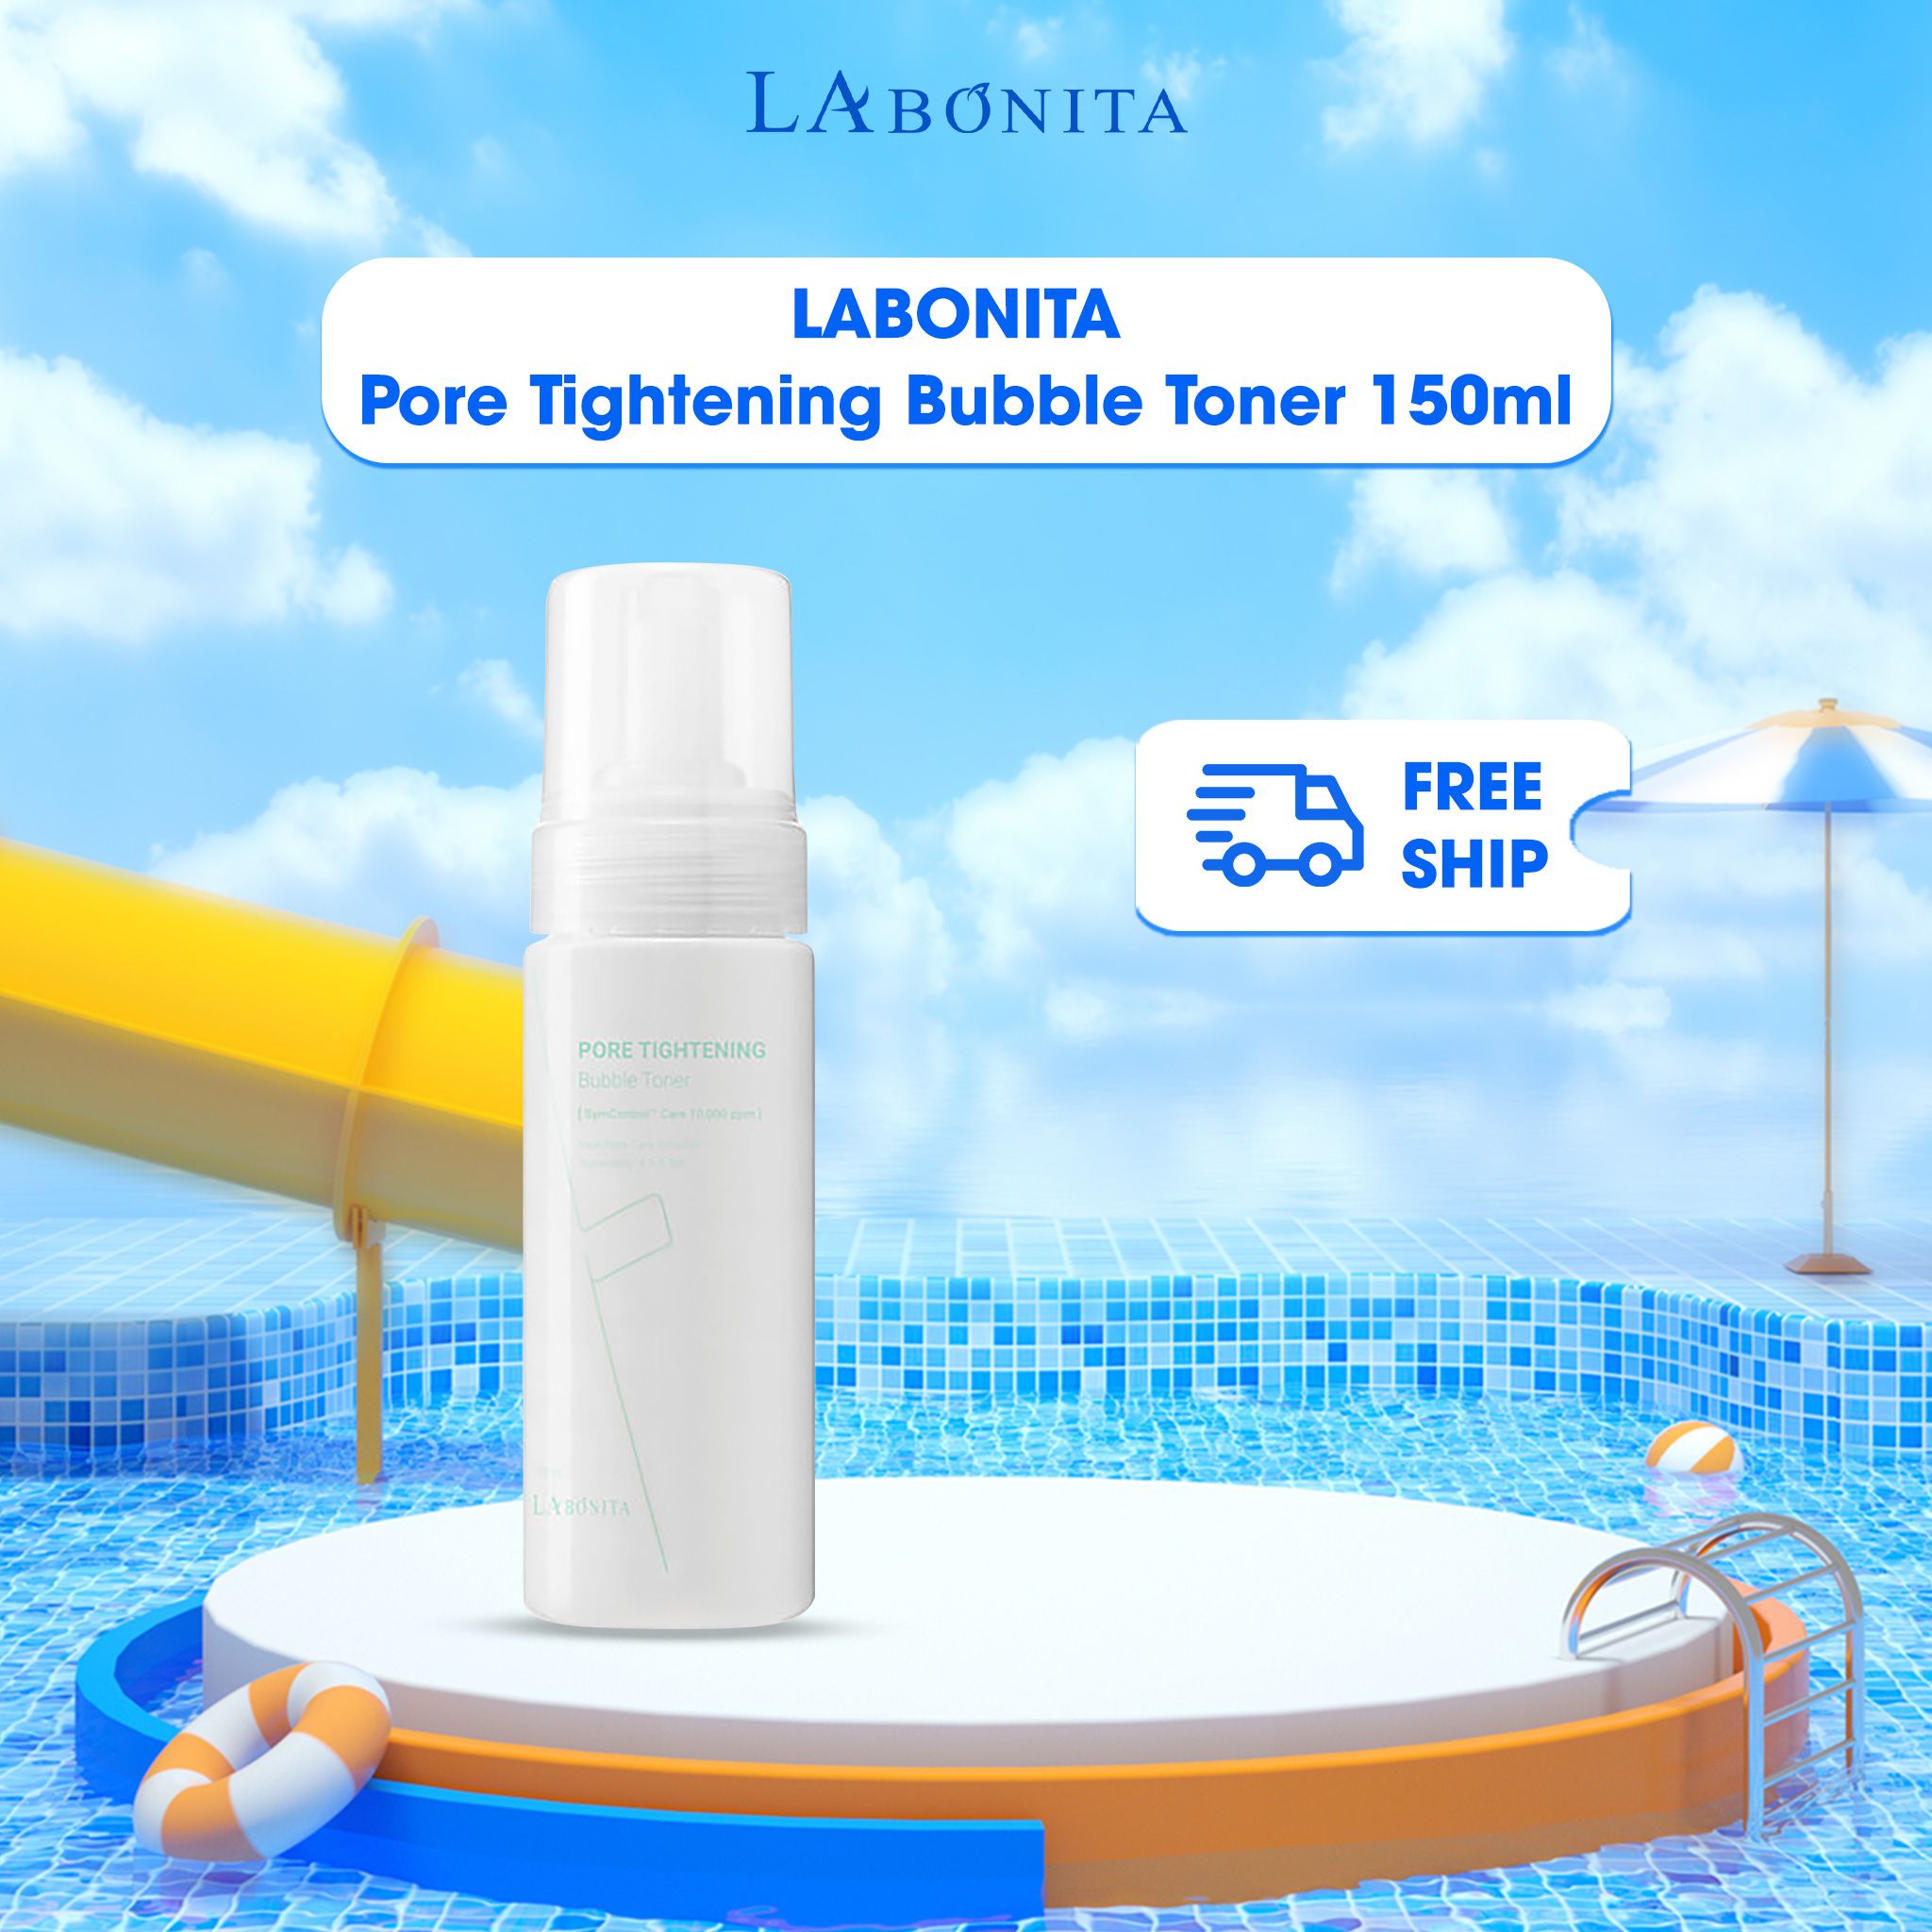  Nước Hoa Hồng Tạo Bọt Cân Bằng Dưỡng Da Labonita Pore Tightening Bubble Toner 150ml 